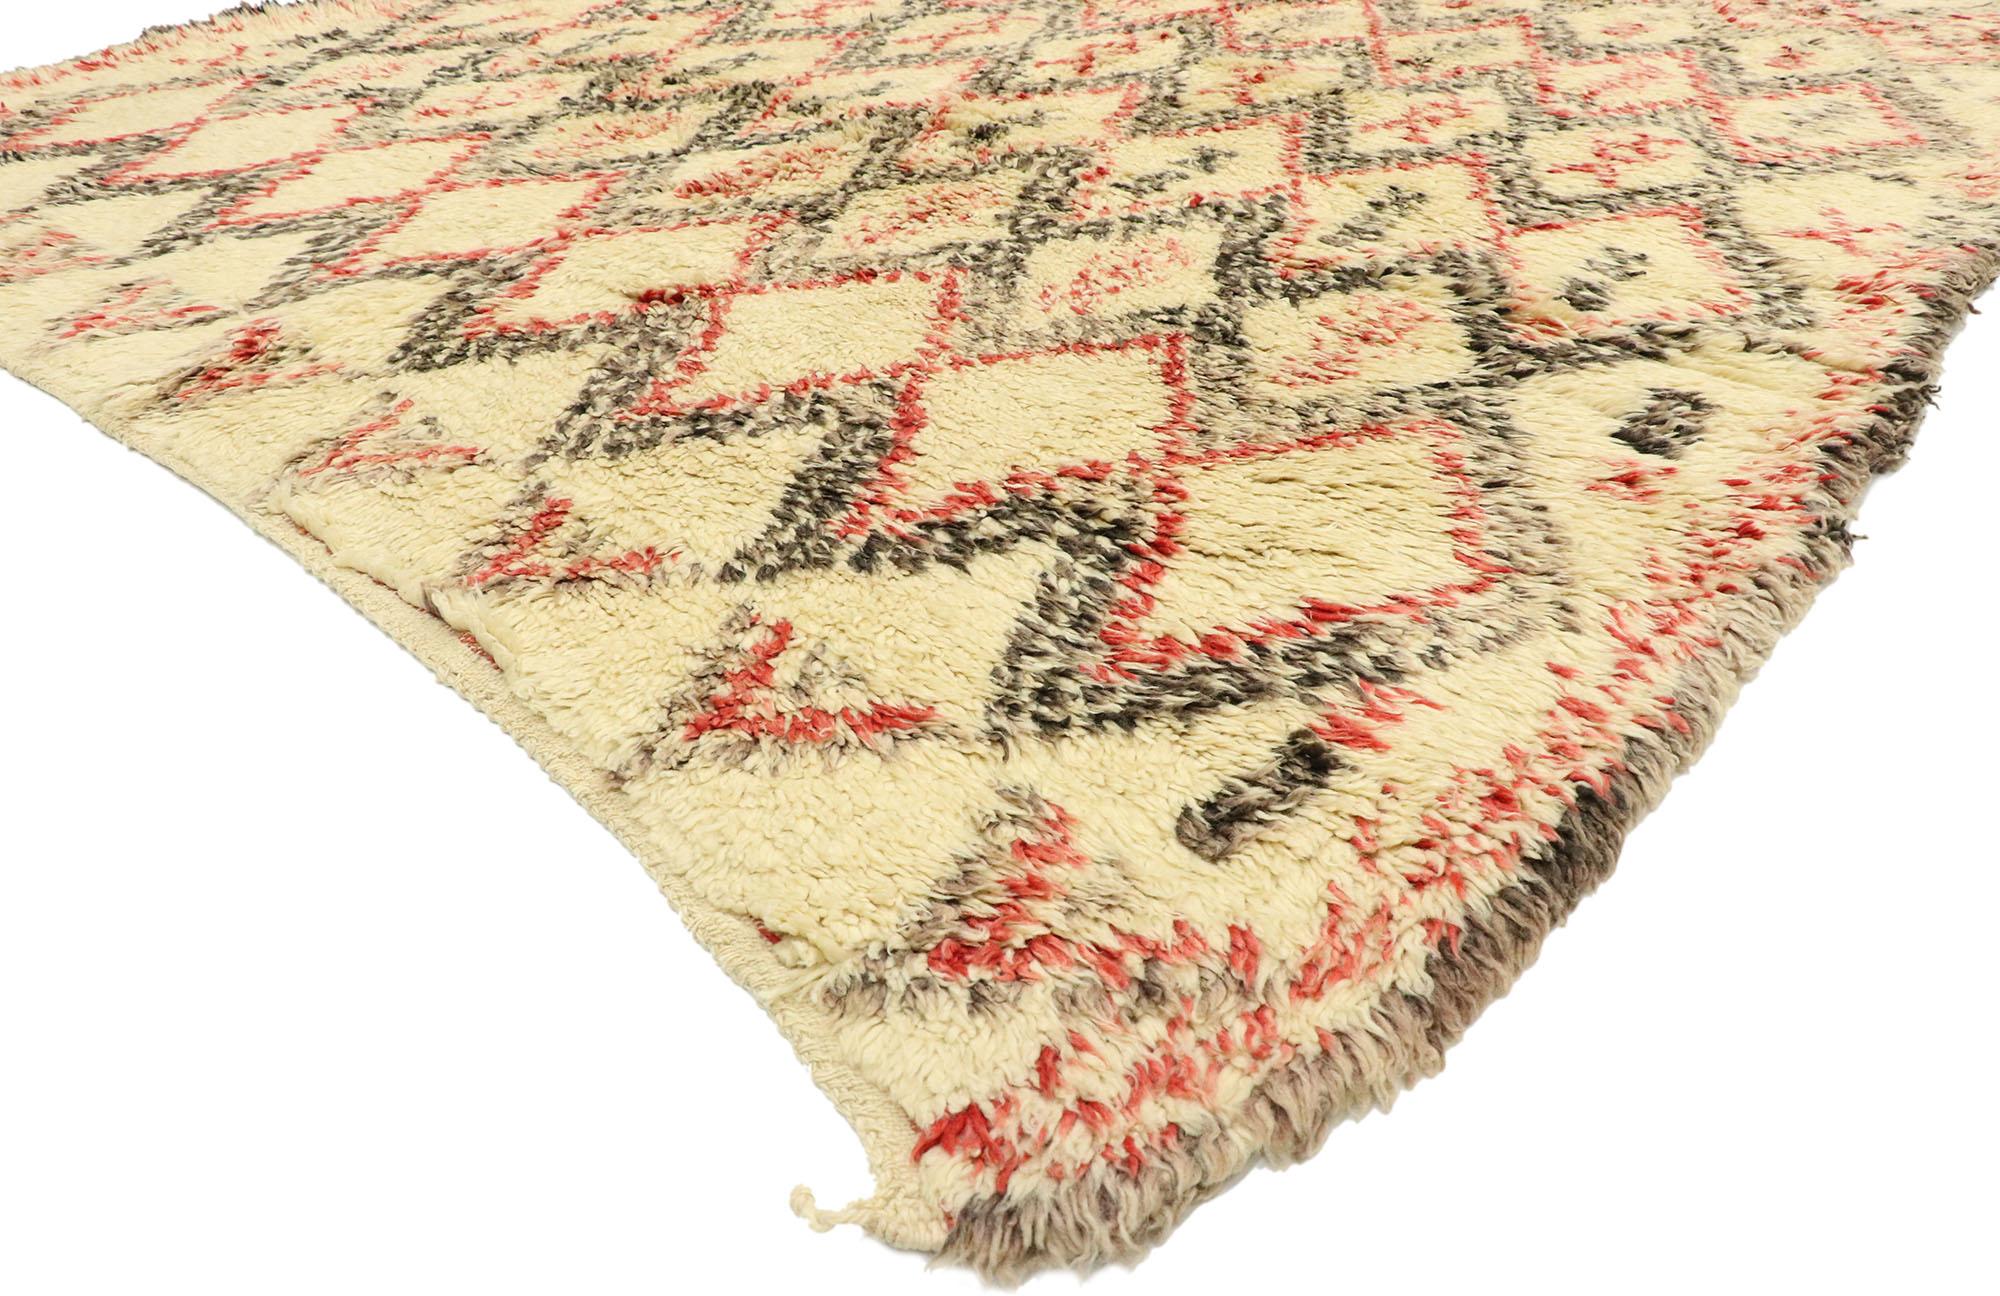 74509, Vintage Beni Ouarain Marokkanischer Teppich mit Mid-Century Modern Stil. Dieser marokkanische Teppich aus handgeknüpfter Wolle im Vintage-Stil von Beni Ourain zeichnet sich durch ein Rautengittermuster aus, das sich über einen sand-beigen